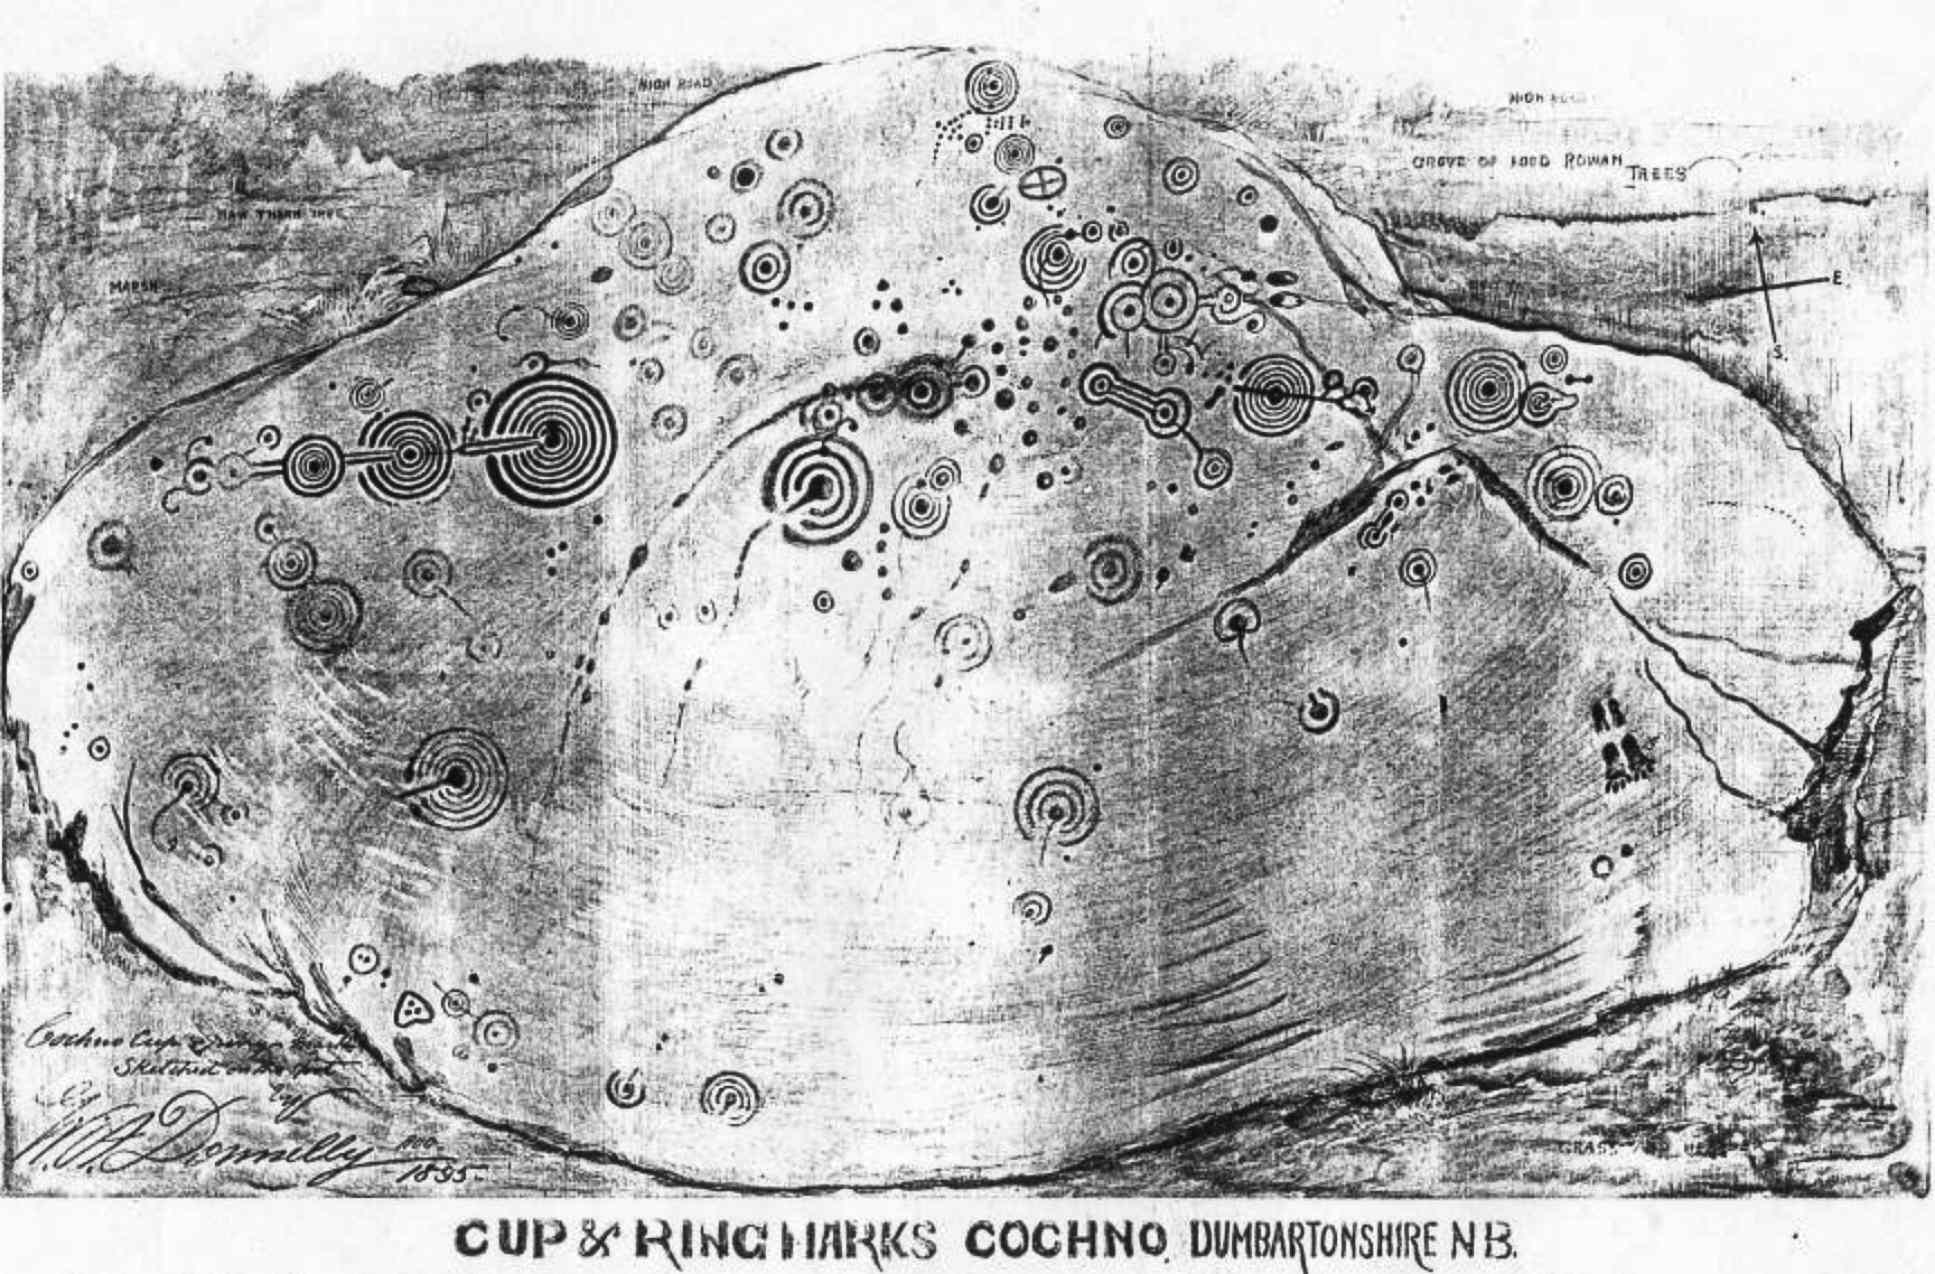 კოჩნოს ქვის ესკიზი WA დონელის მიერ 1895 წელს